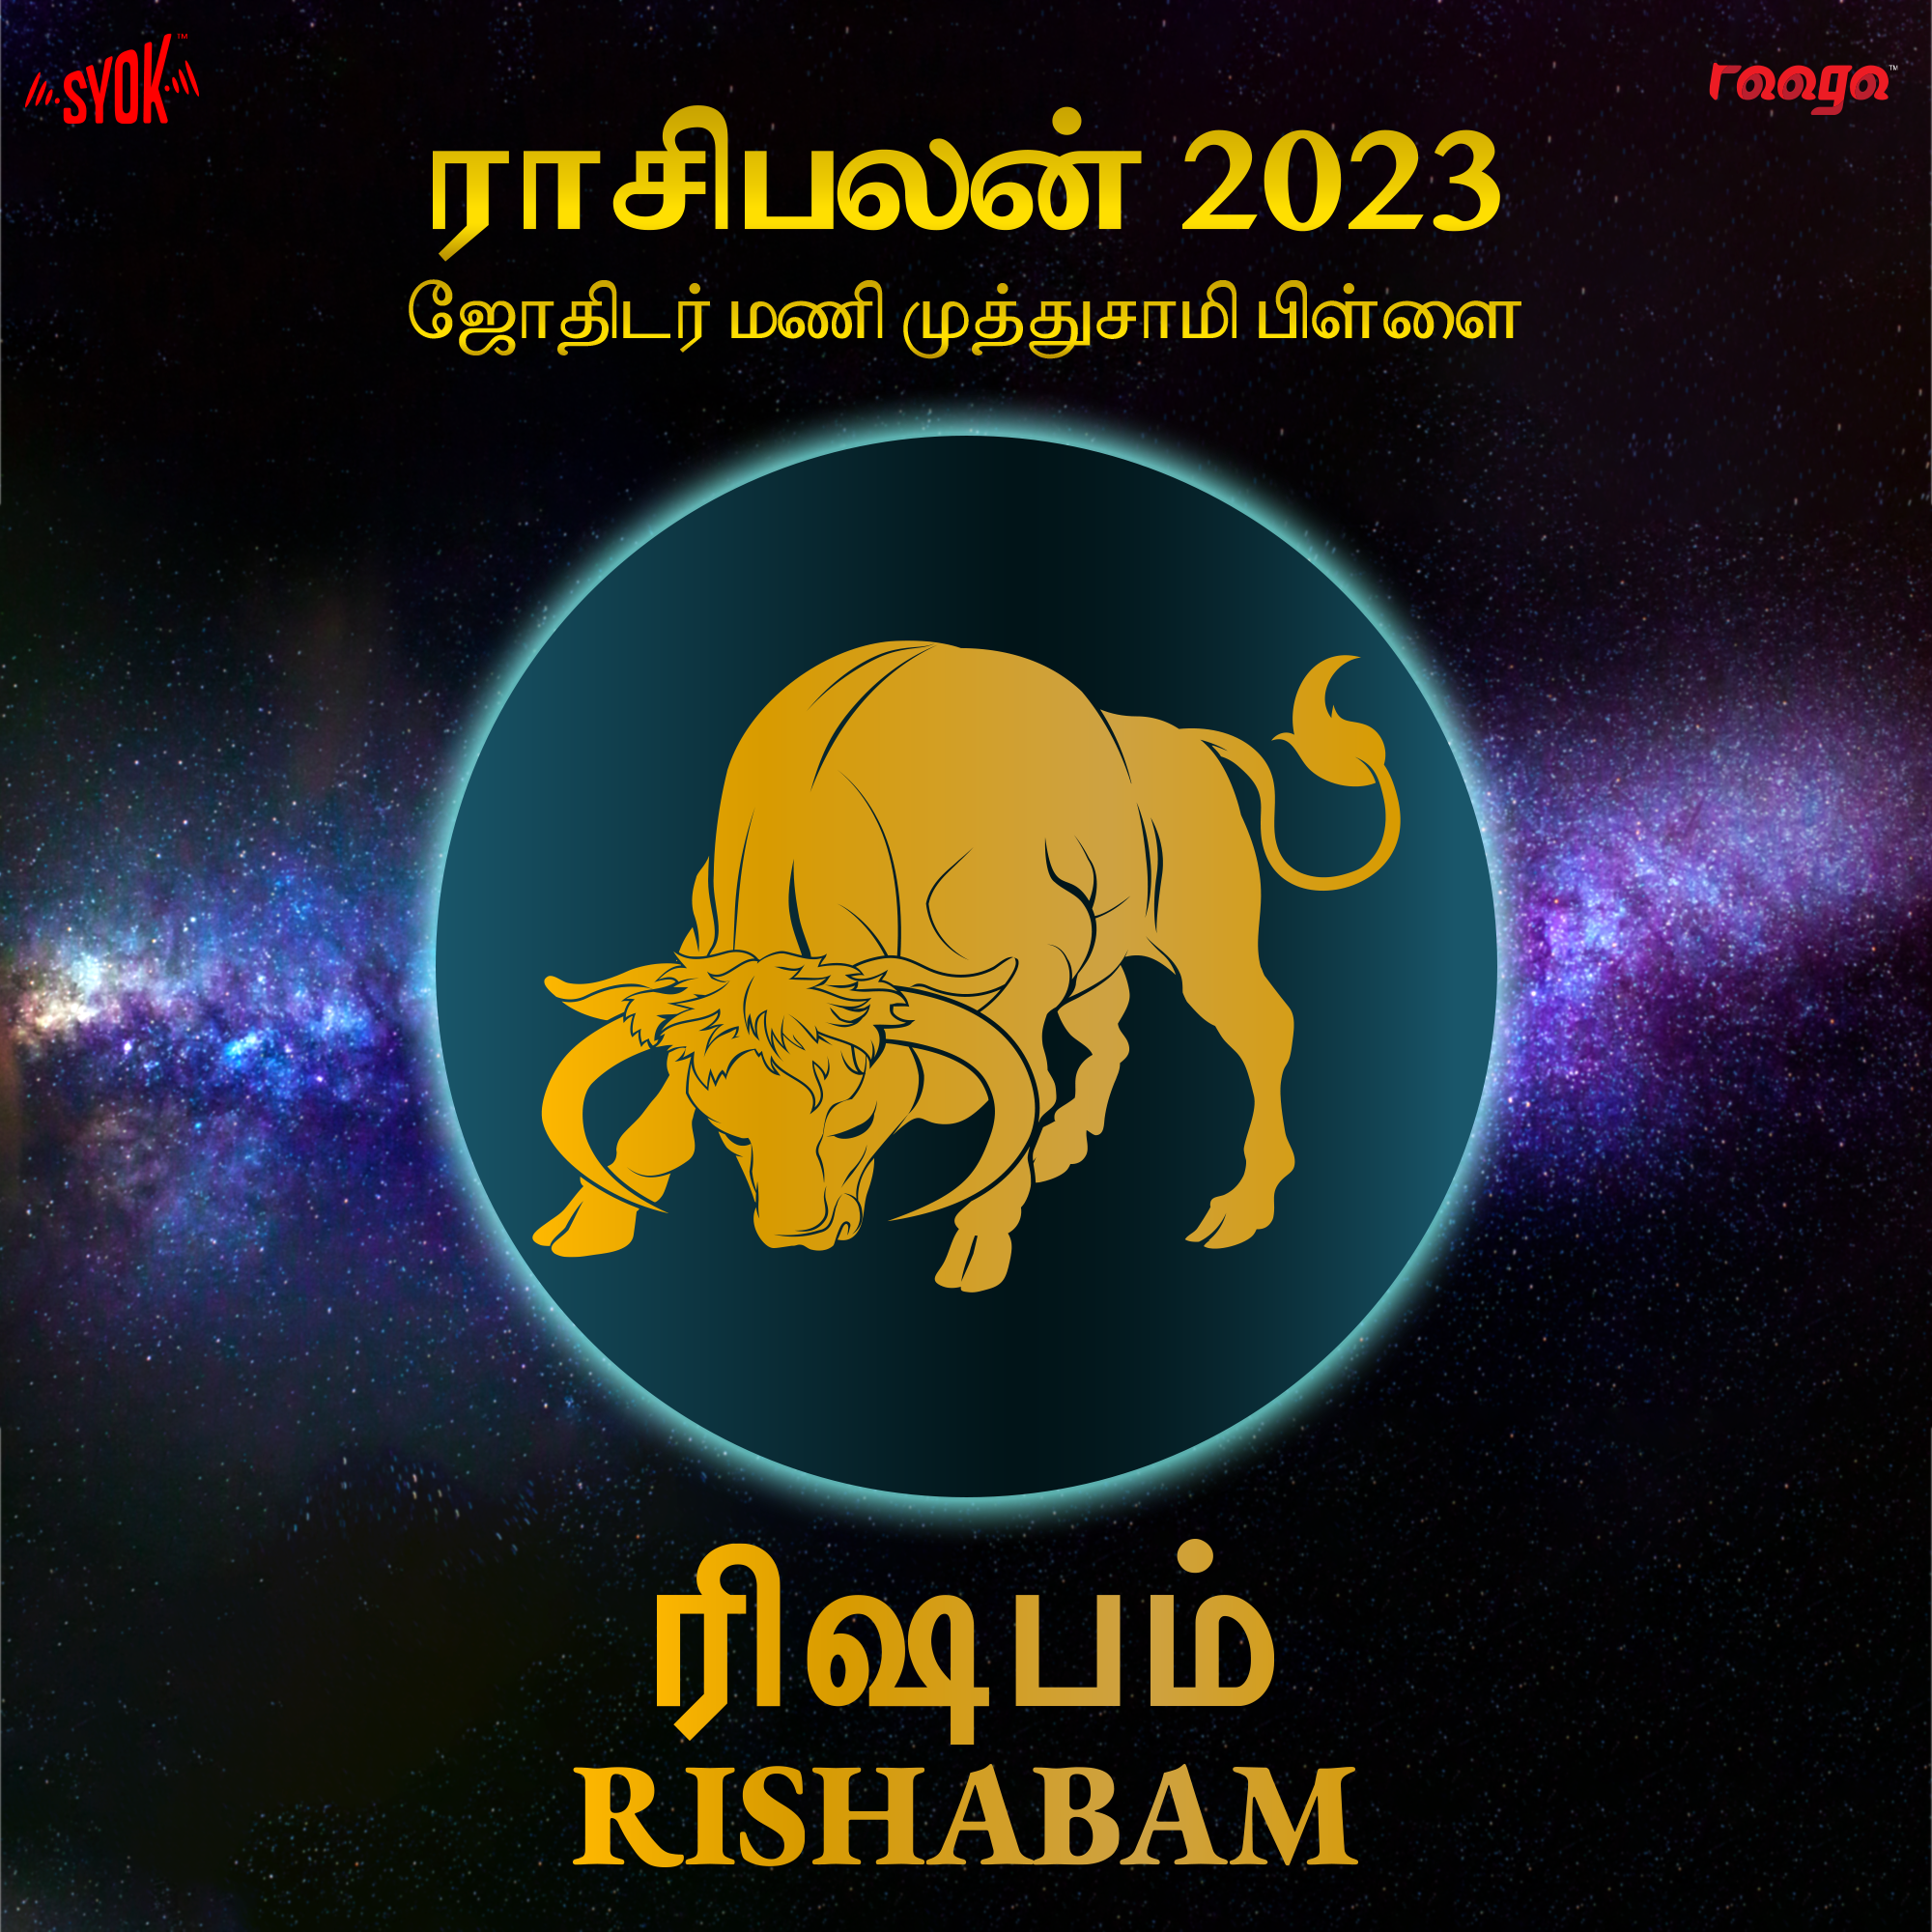 ரிஷப ராசி விகாரி வருட பலன்கள் 2019 – 2020 – Tamil Jothidam Tips